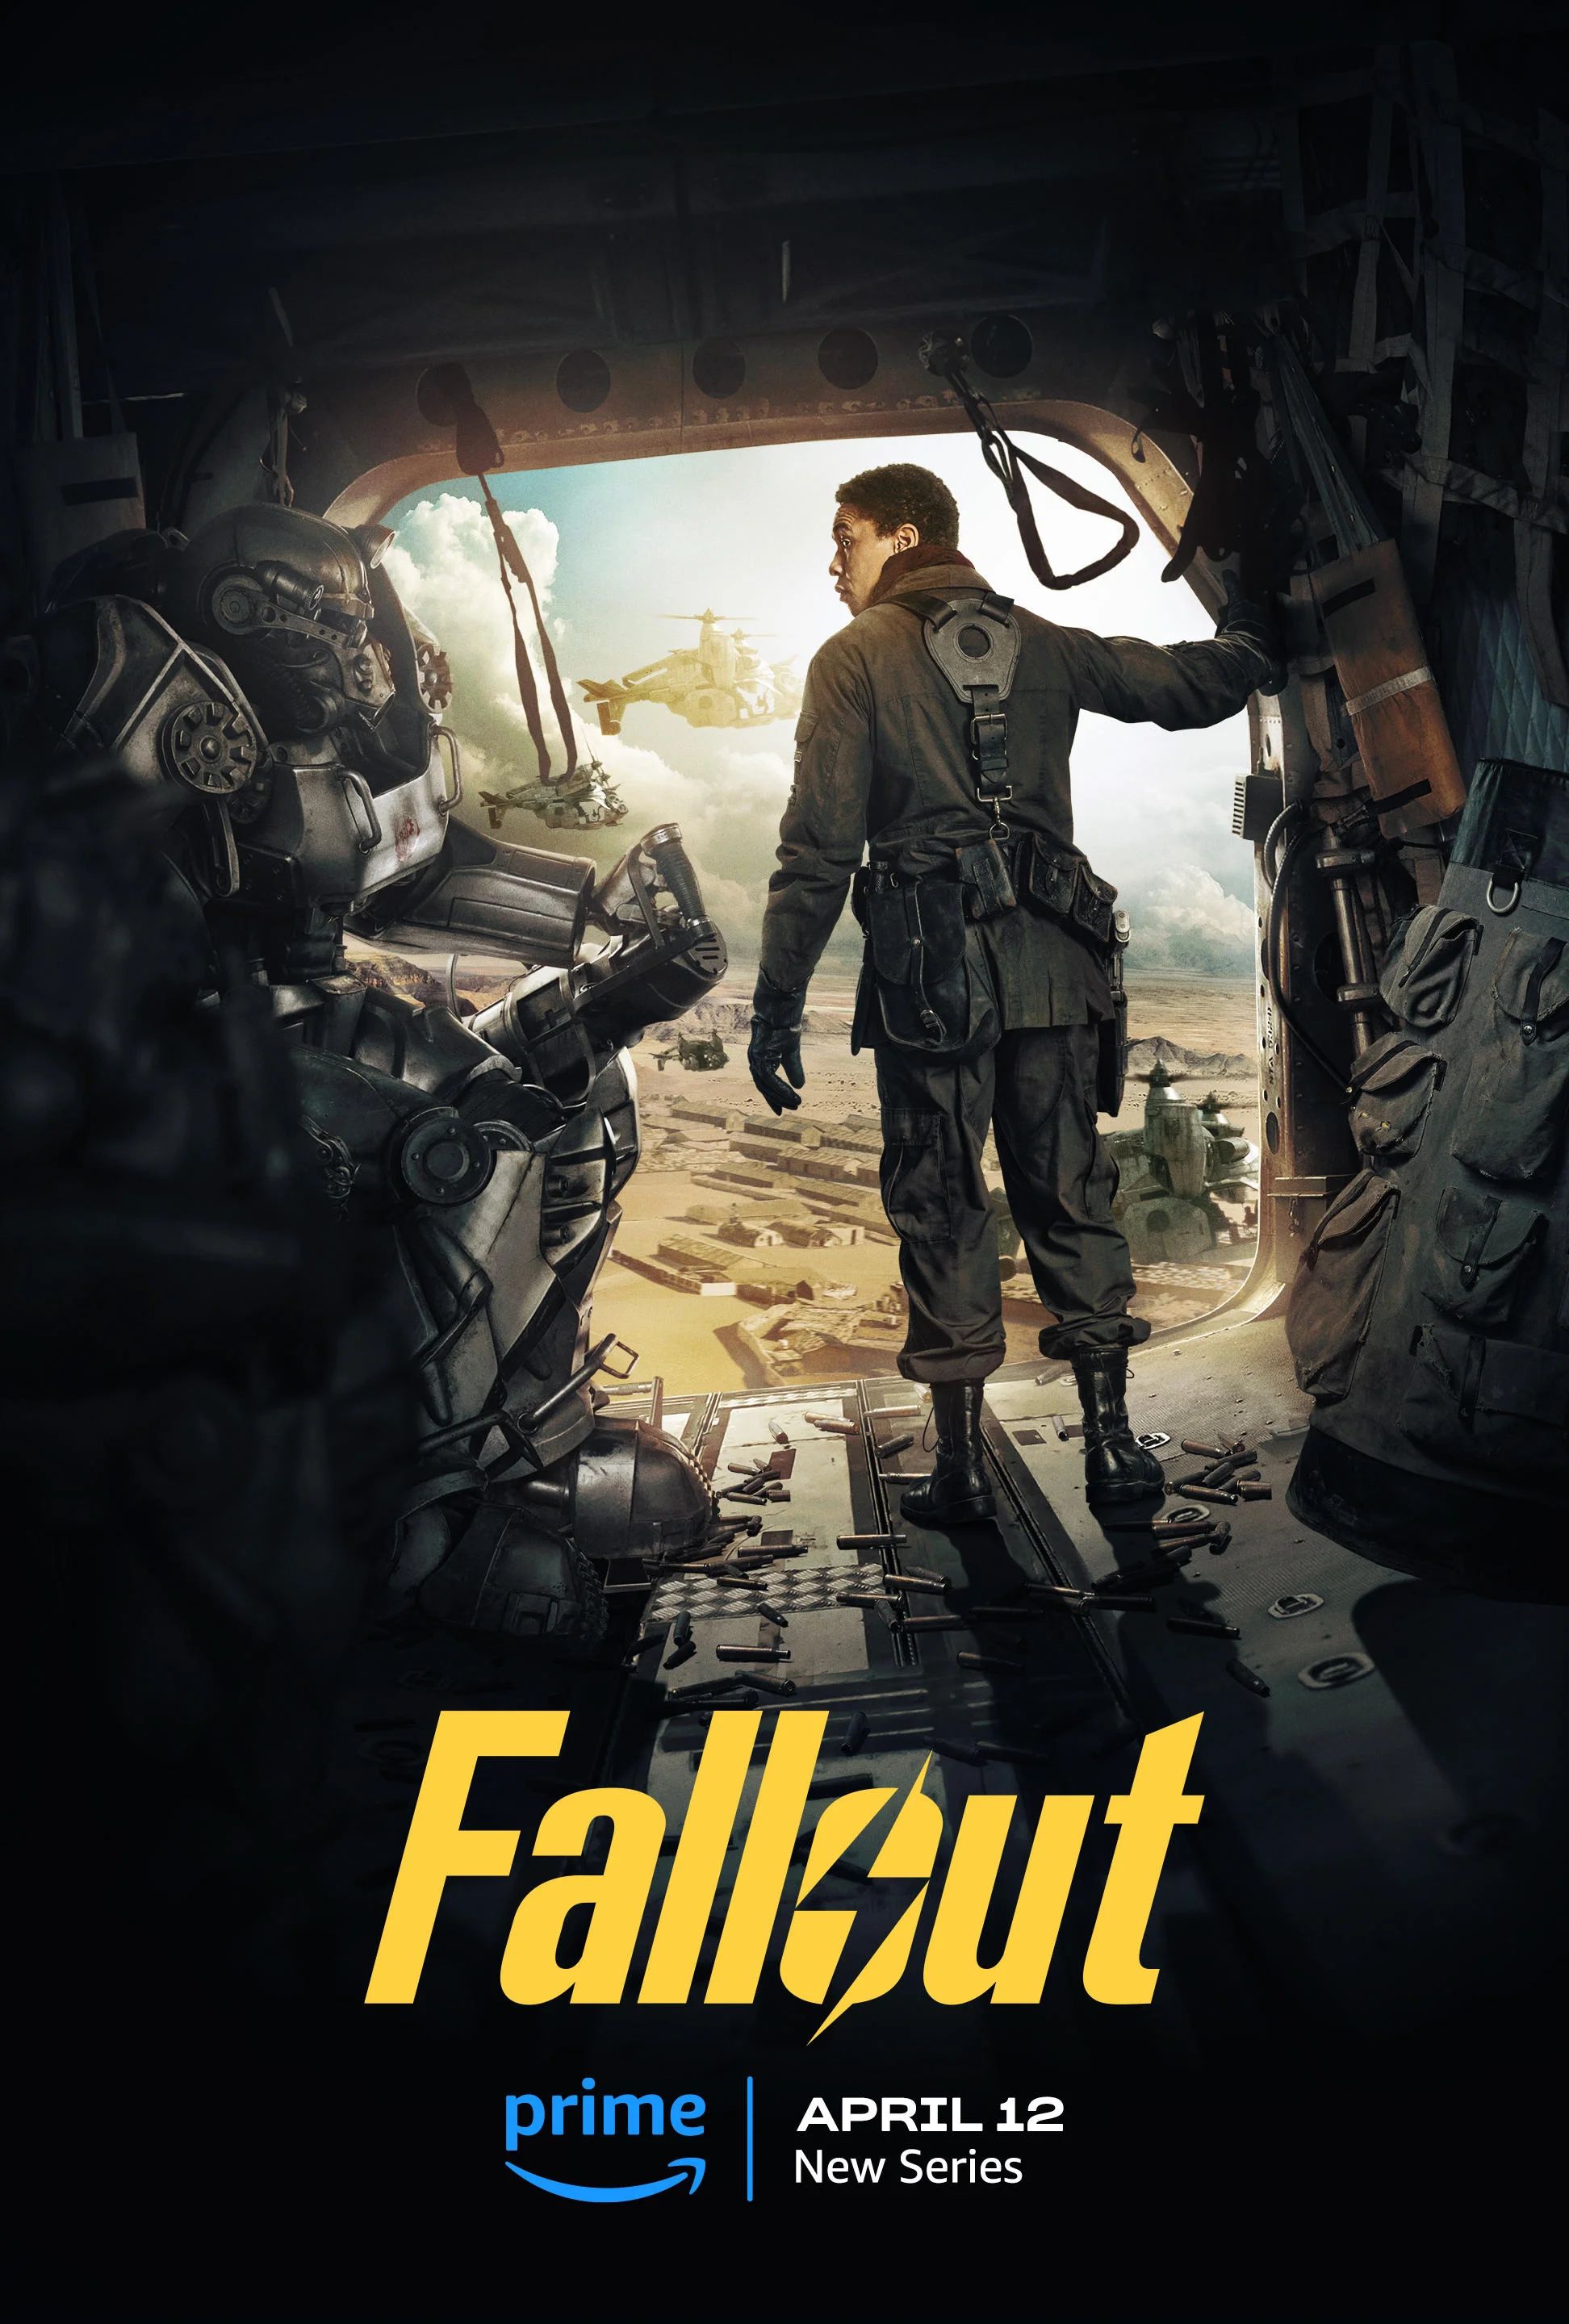 Максимус из Fallout. Источник: Amazon